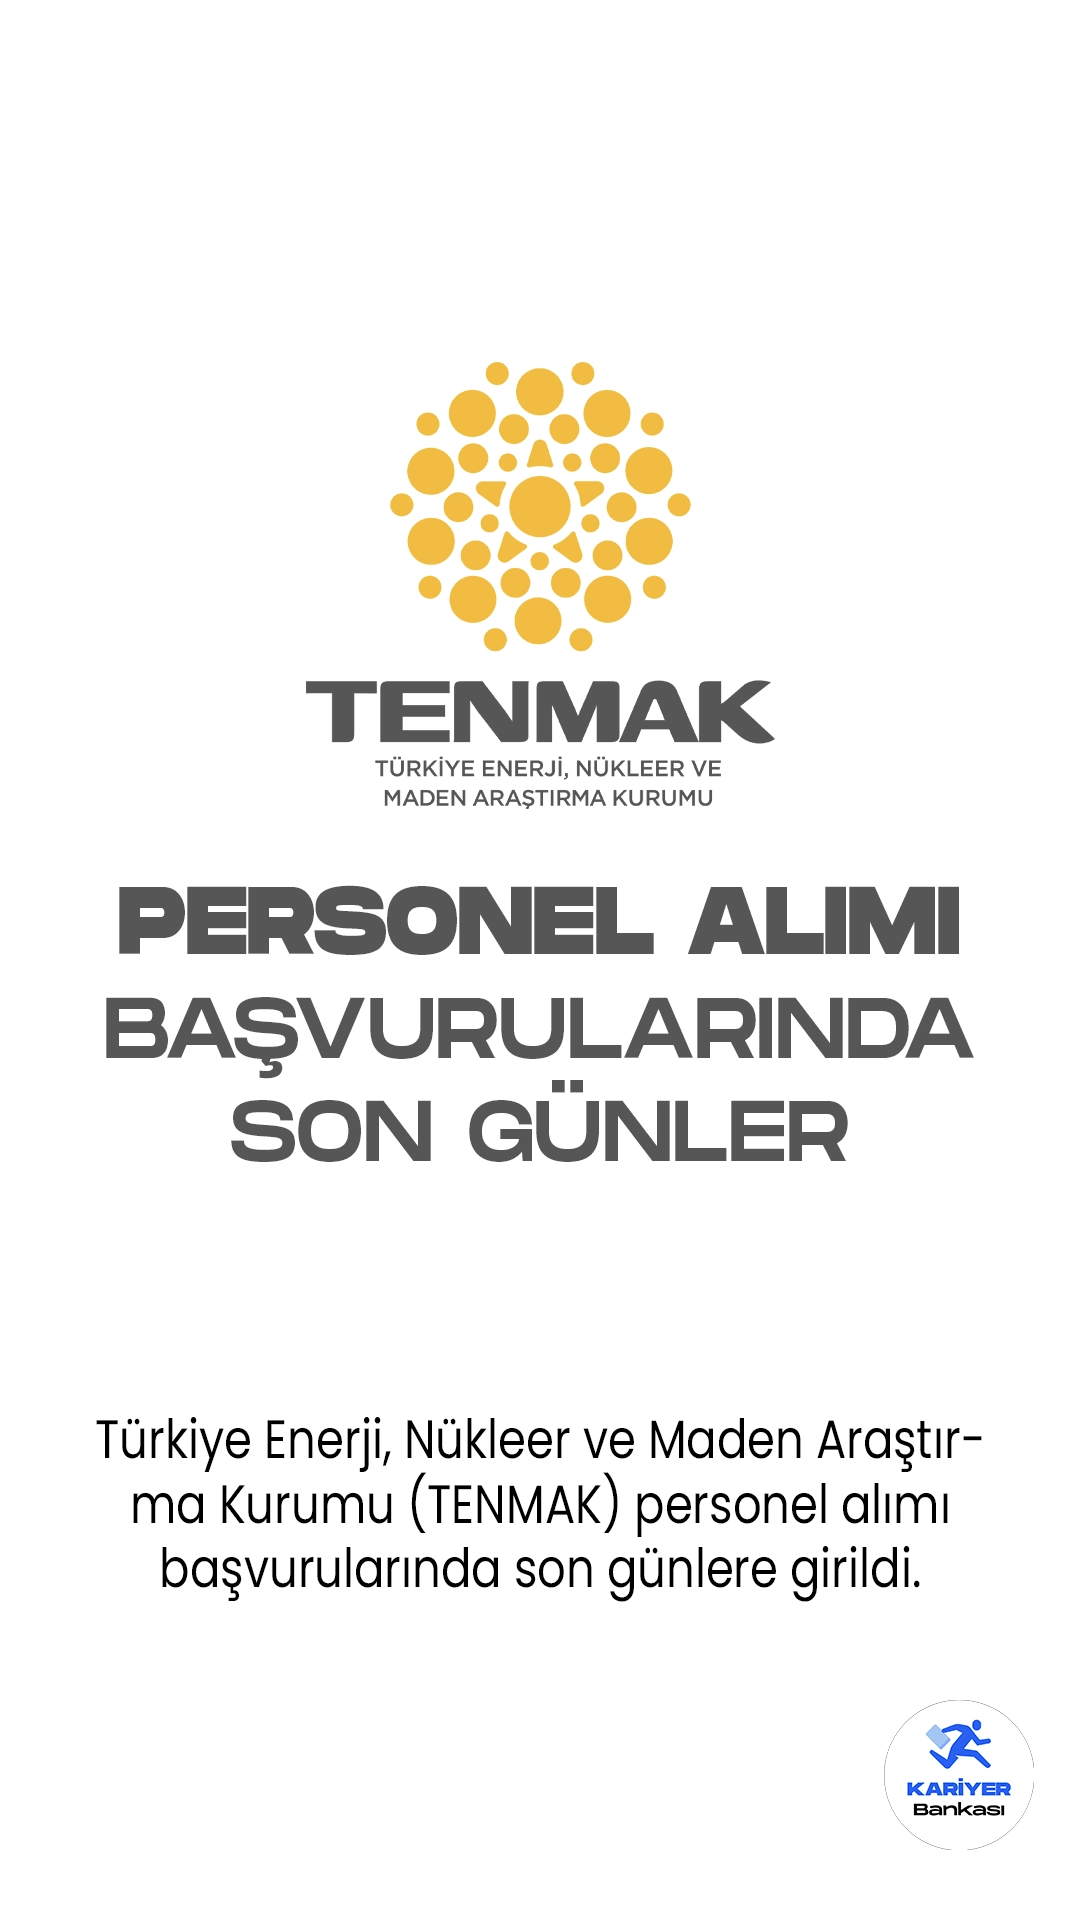 Türkiye Enerji, Nükleer ve Maden Araştırma Kurumu (TENMAK) personel alımı başvurularında son günlere girildi.